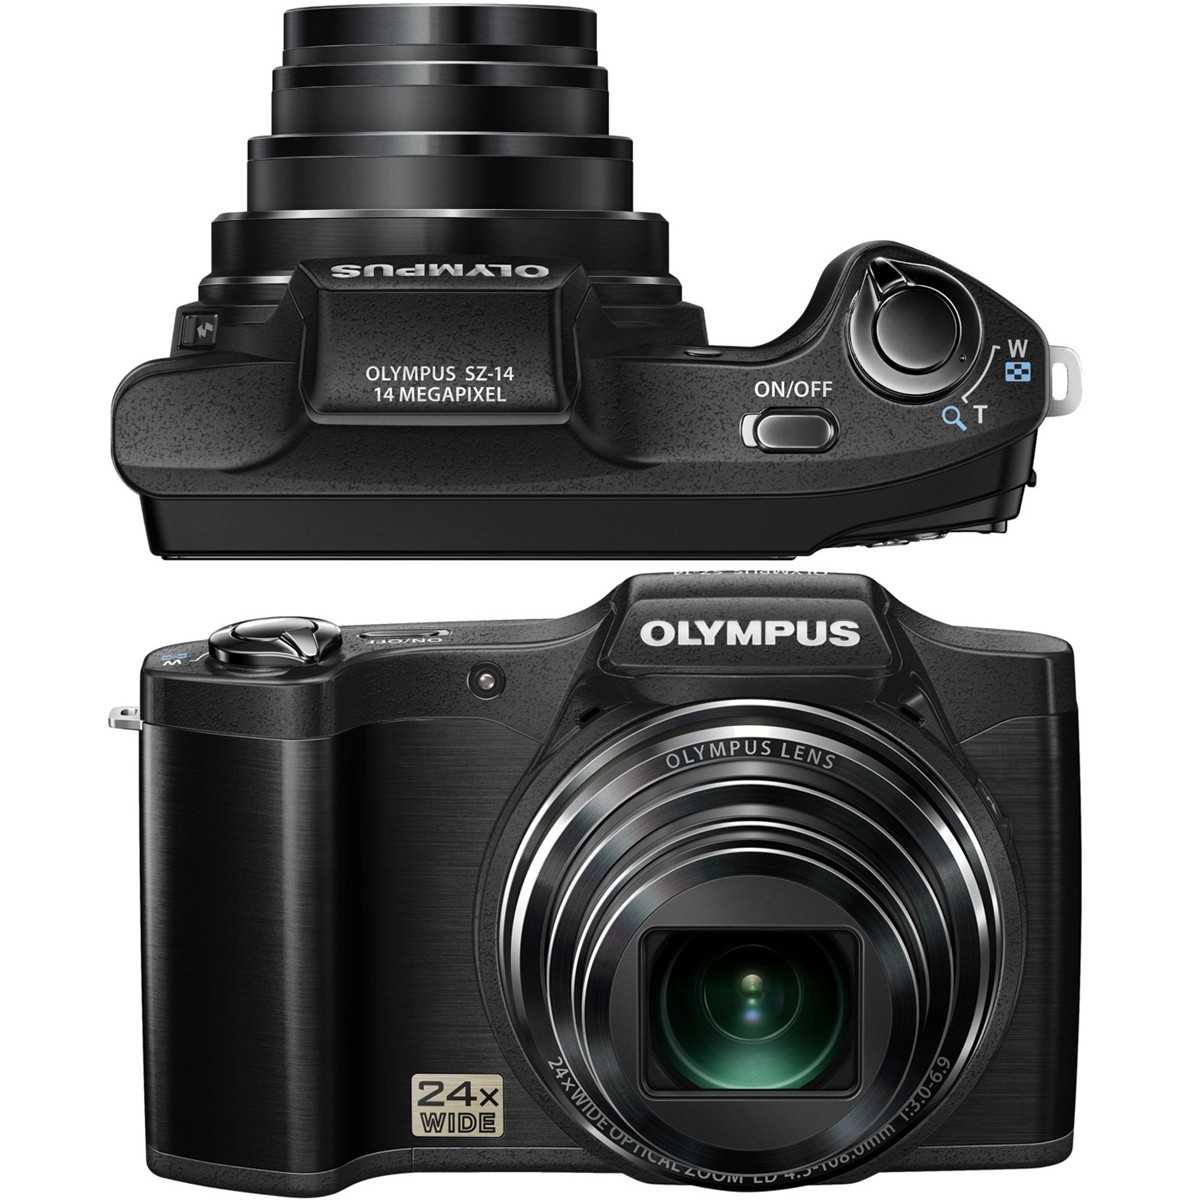 Цифровой фотоаппарат Olympus SZ-15 - подробные характеристики обзоры видео фото Цены в интернет-магазинах где можно купить цифровую фотоаппарат Olympus SZ-15